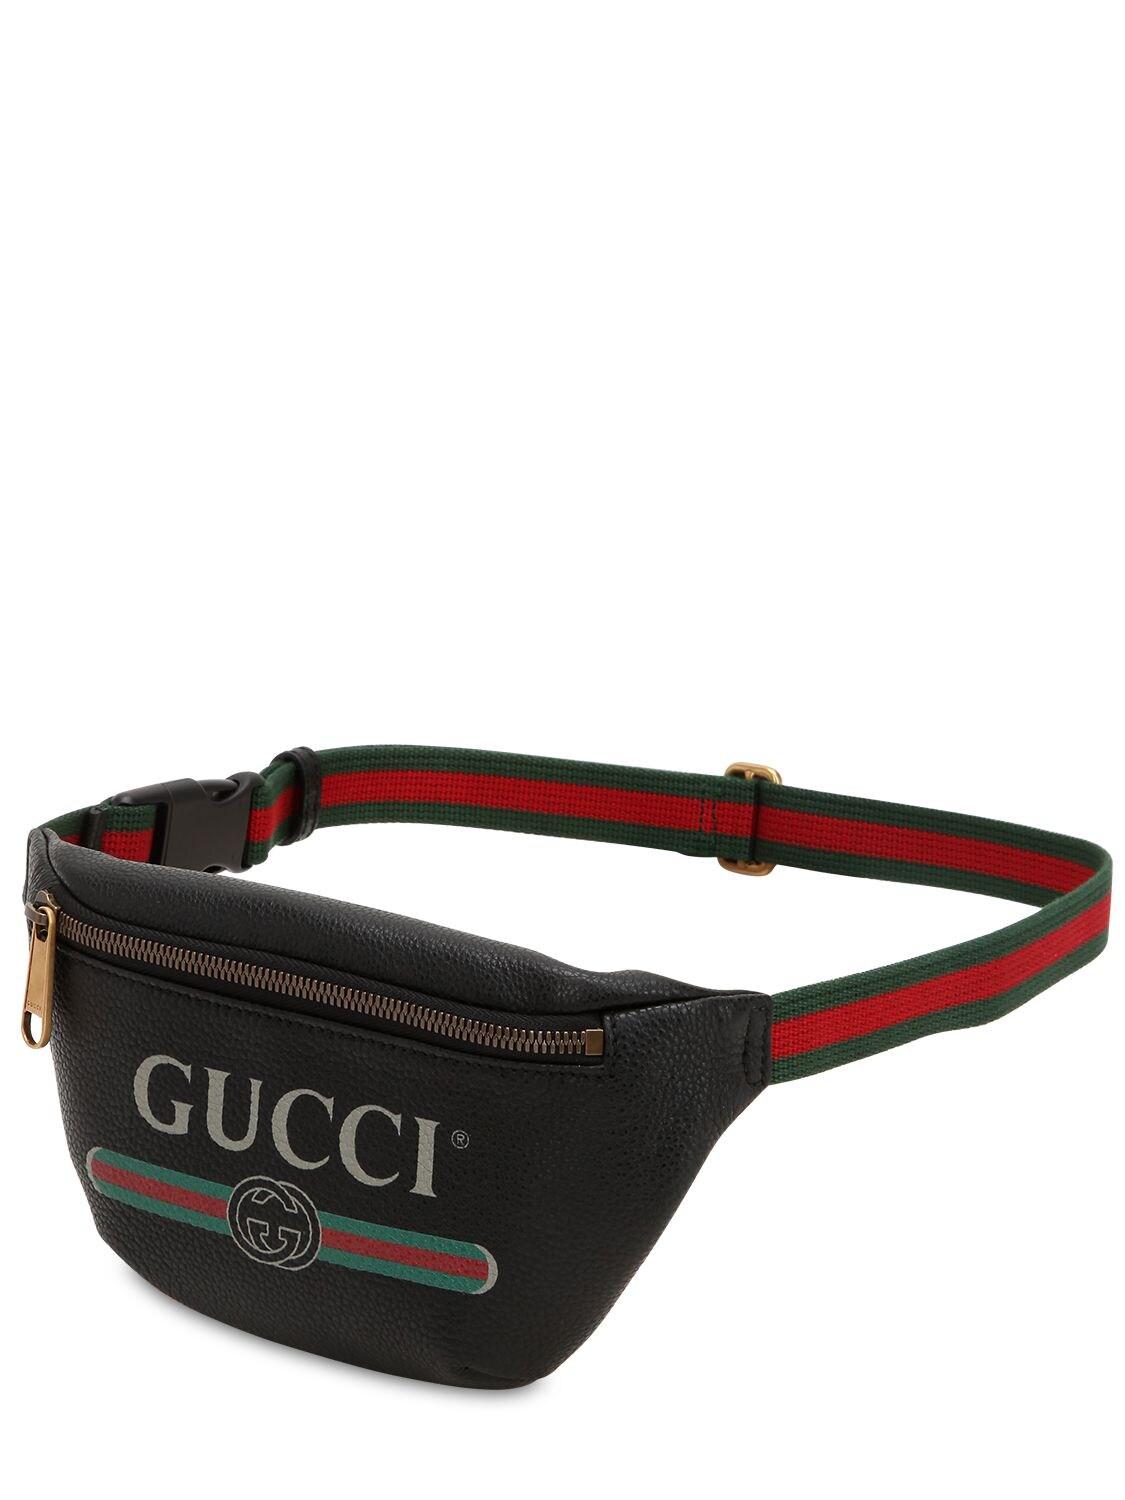 Gucci Print Leather Belt Bag in Black for Men - Lyst